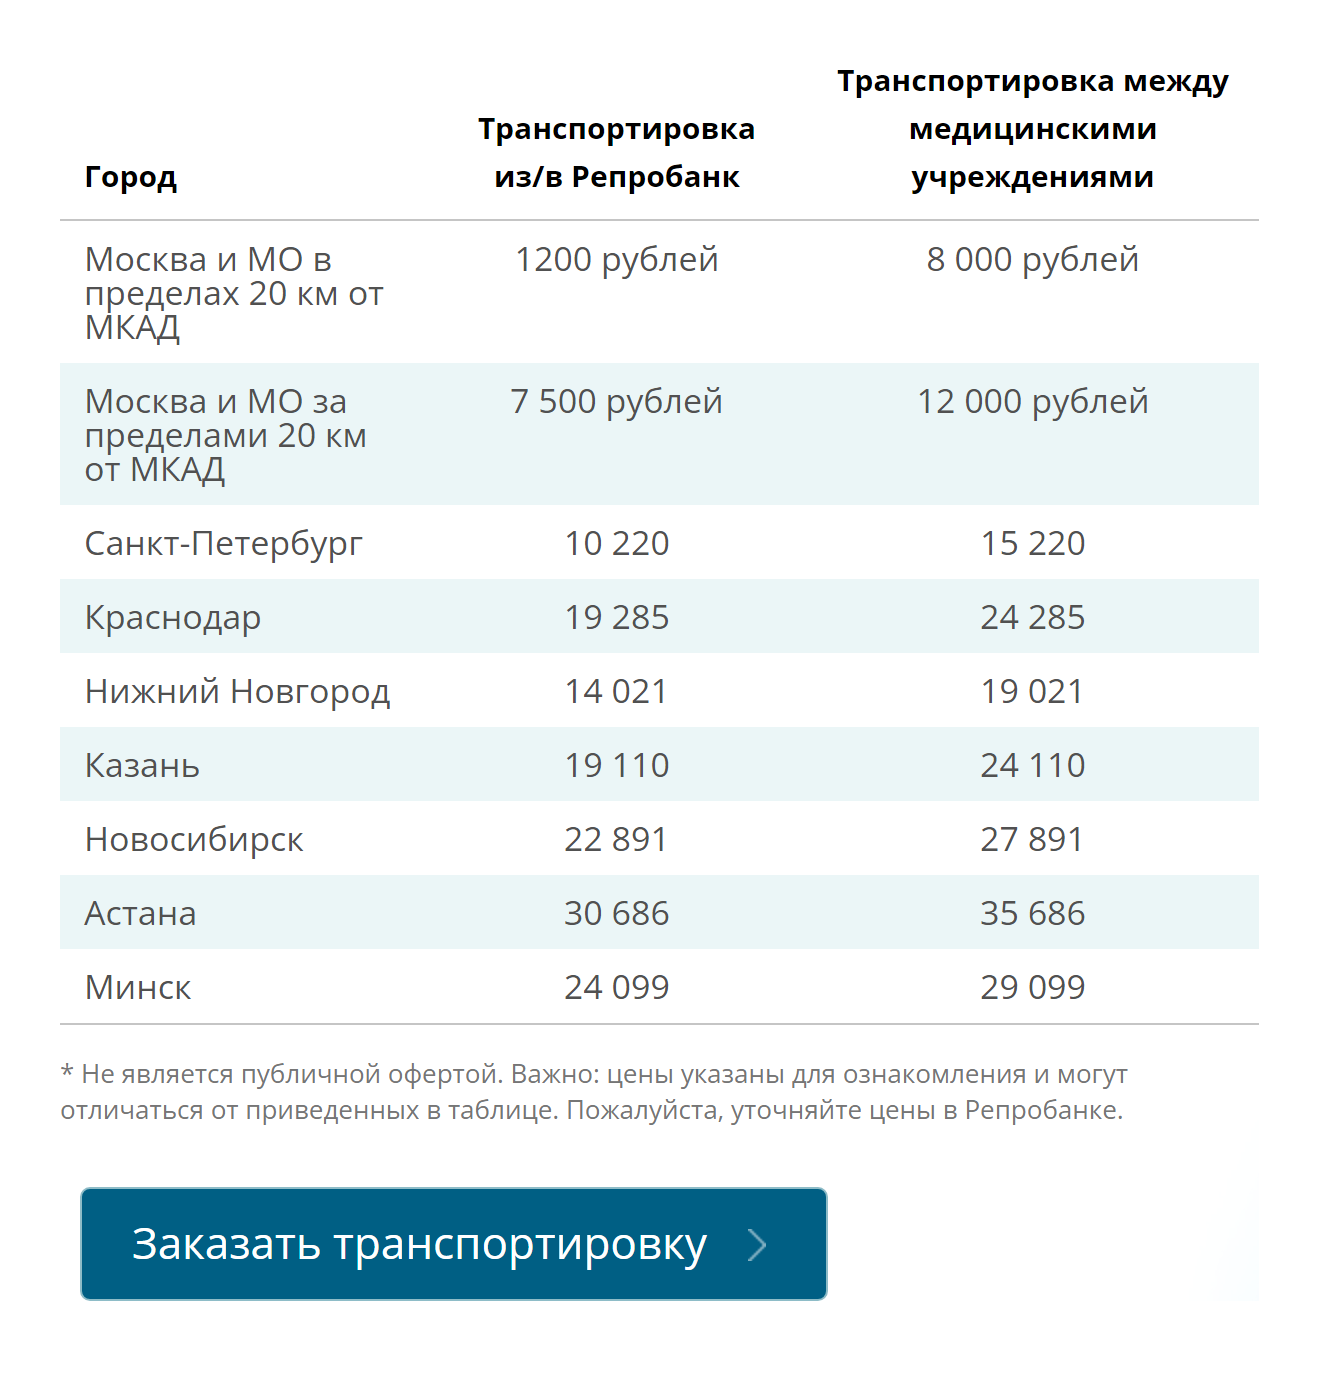 Это прайс на перевозку от криобанка, где хранились мои эмбрионы. В других городах цены гораздо выше. Источник: reprobank.ru